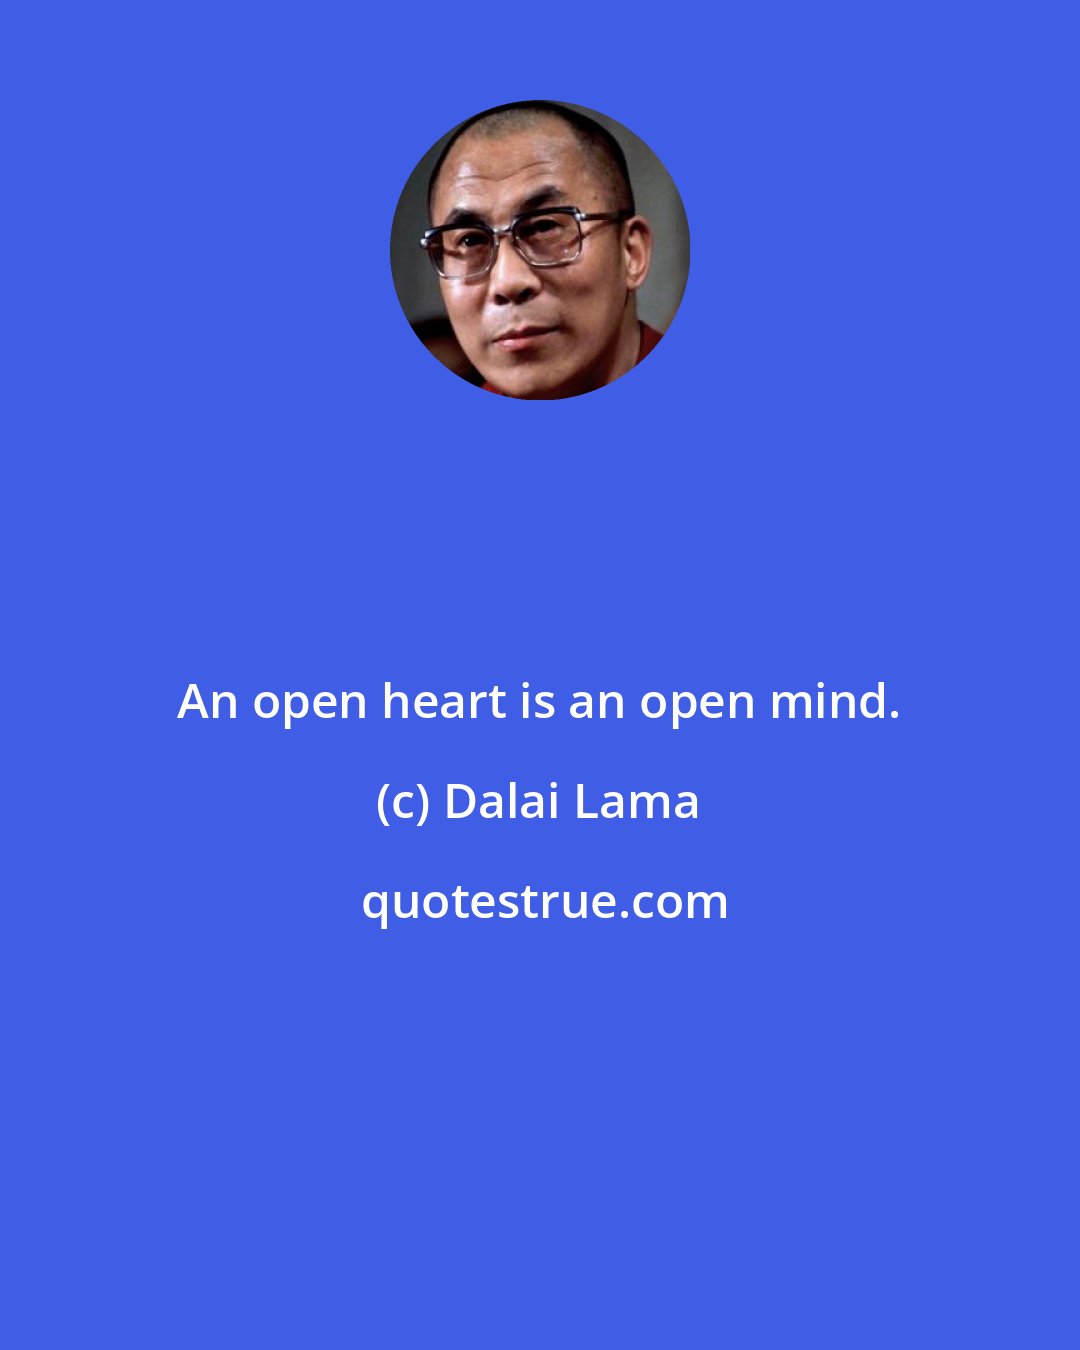 Dalai Lama: An open heart is an open mind.